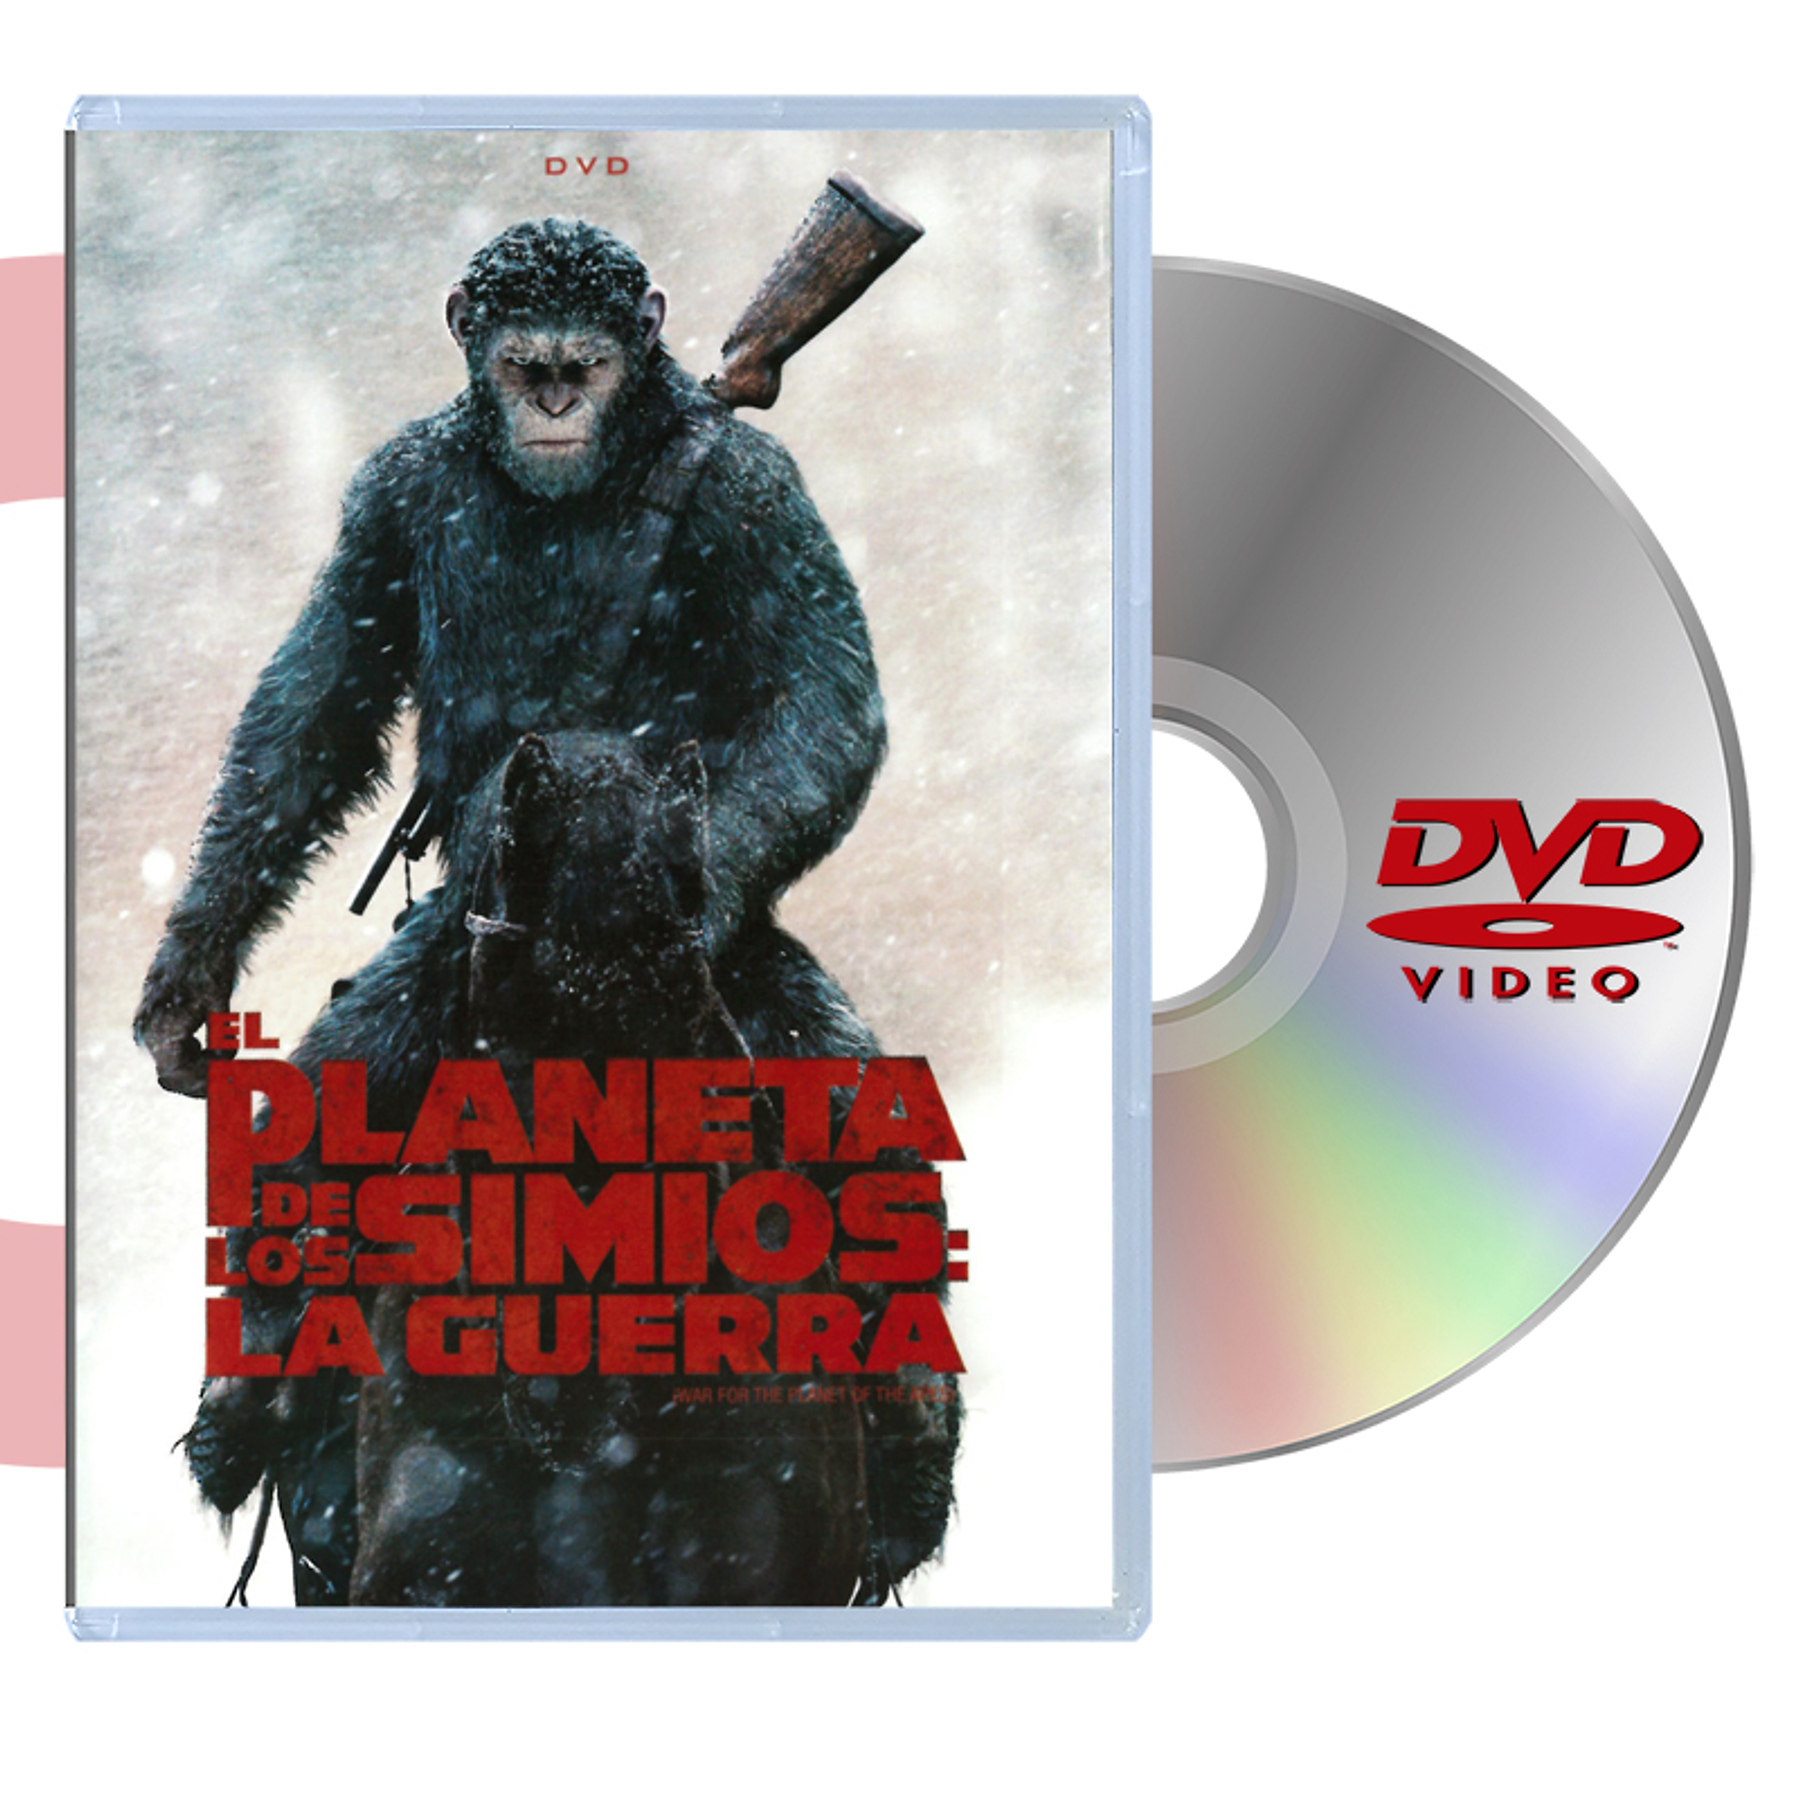 DVD PLANETA DE LOS SIMIOS: GUERRA